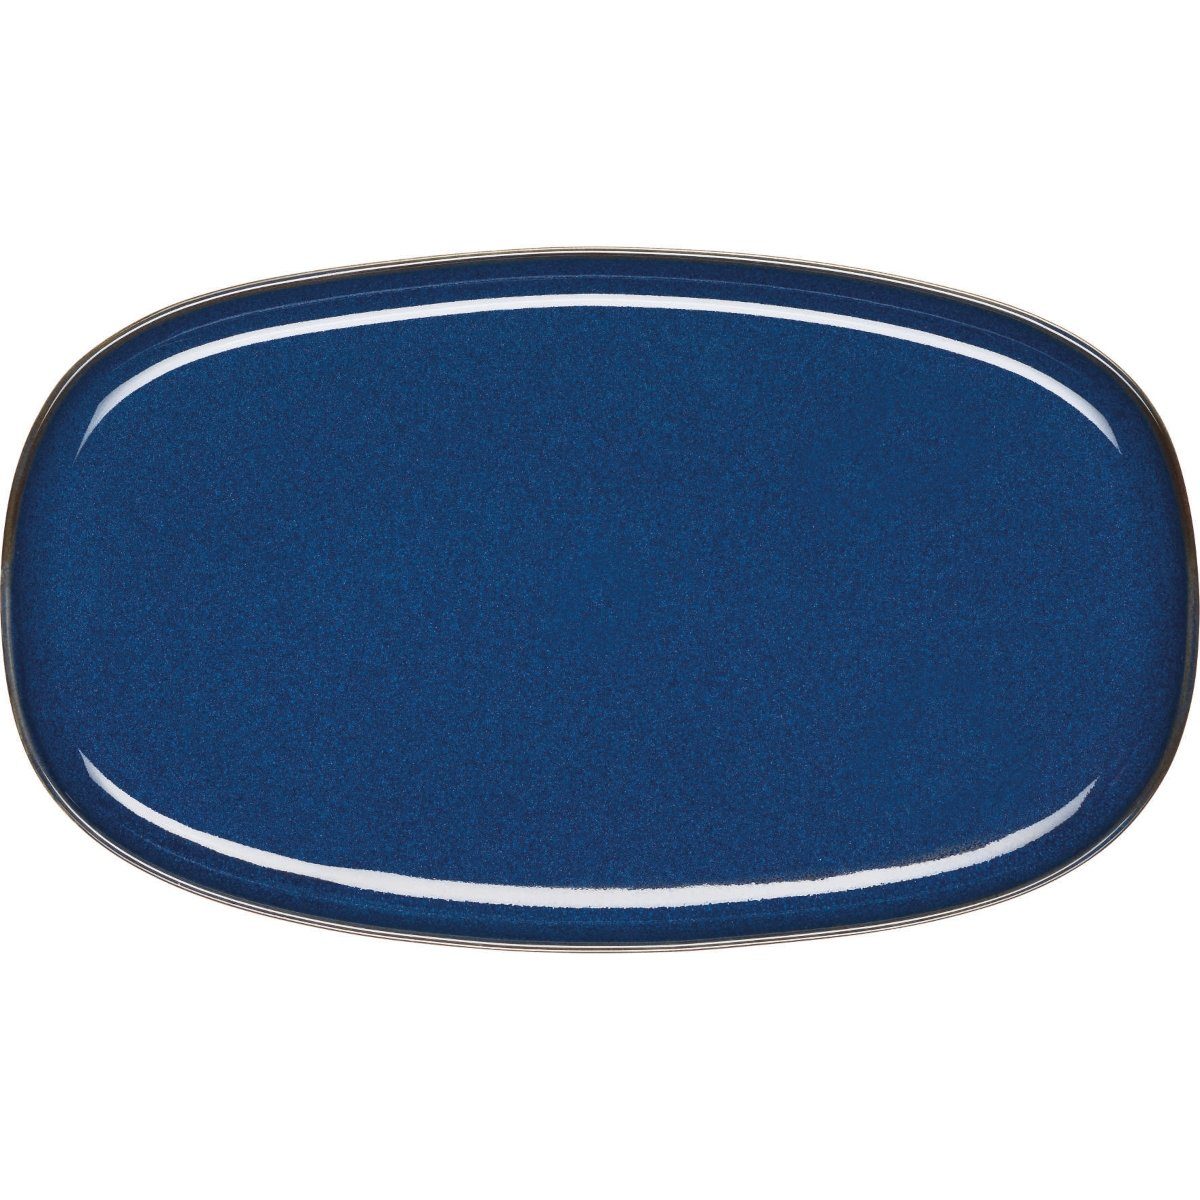 ASA SELECTION Servierplatte SAISONS Platte oval midnight blue 31 x 18 cm, Steinzeug, (Platten oval)